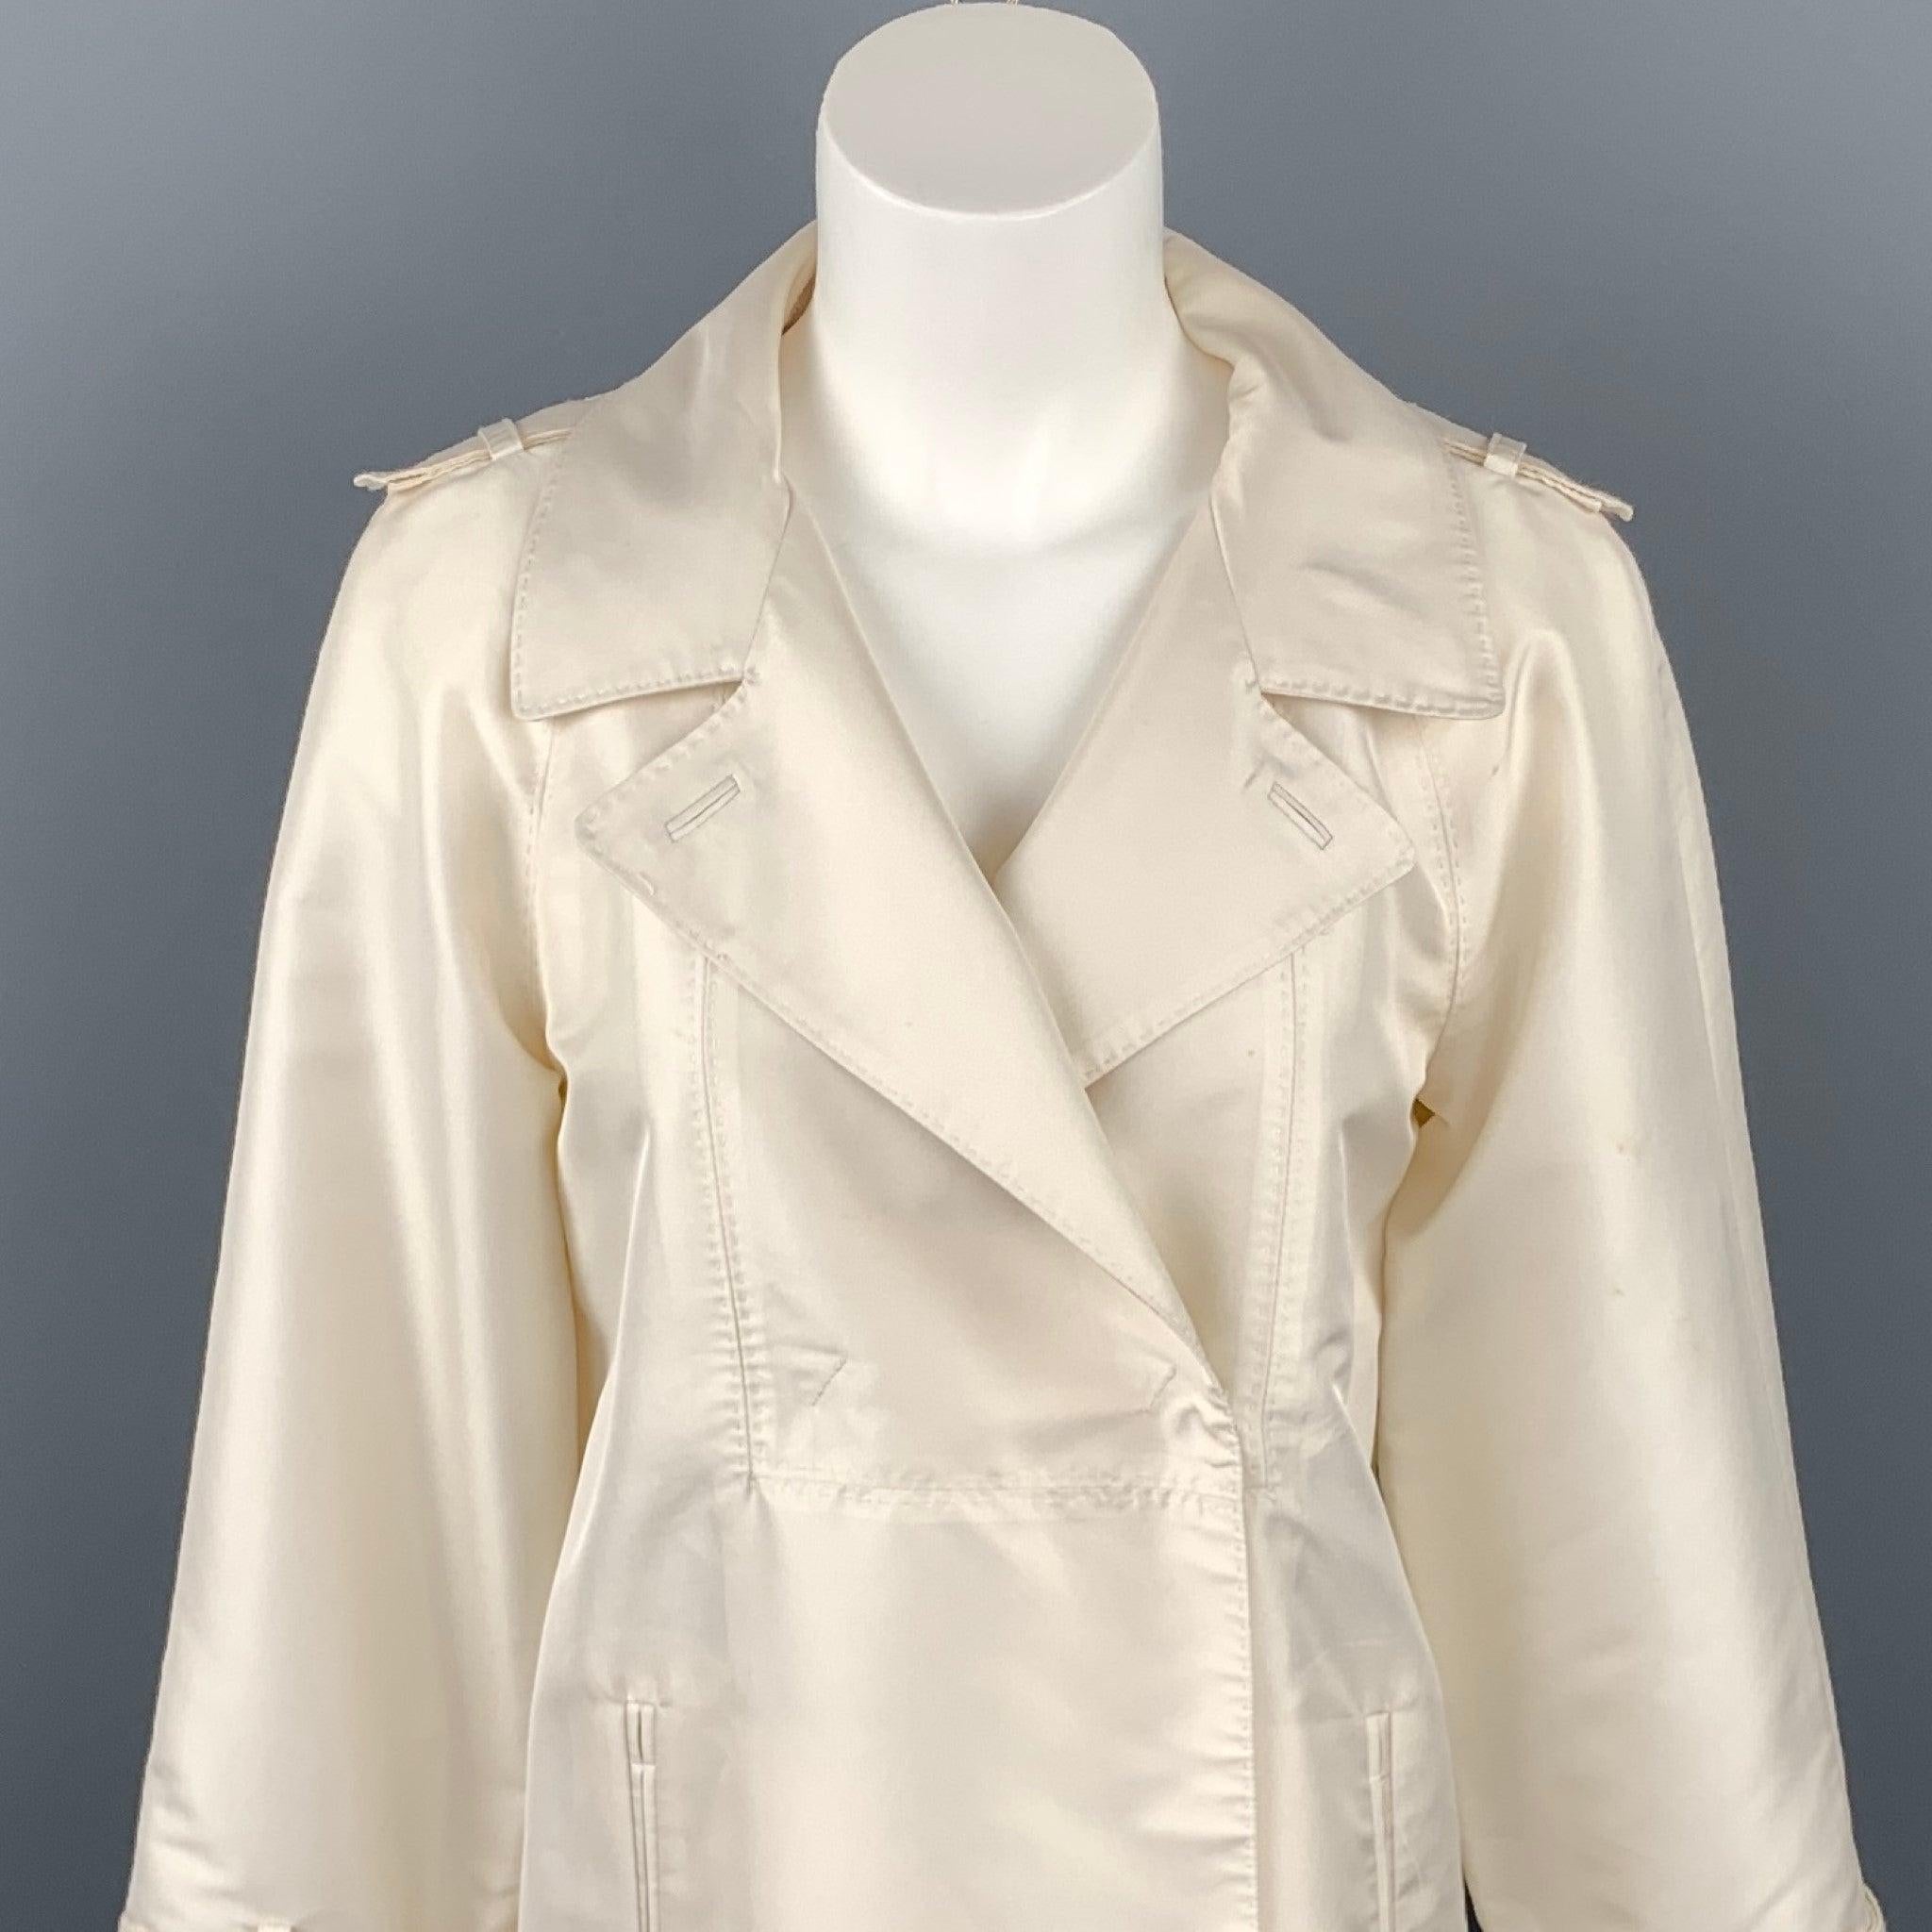 La veste CoSTUME NATIONAL est en polyester sergé crème avec une demi-doublure. Elle présente un revers à cran, des épaulettes, des poches fendues et une fermeture cachée à double boutonnage. Décoloration sur l'ensemble du document. Fabriqué en